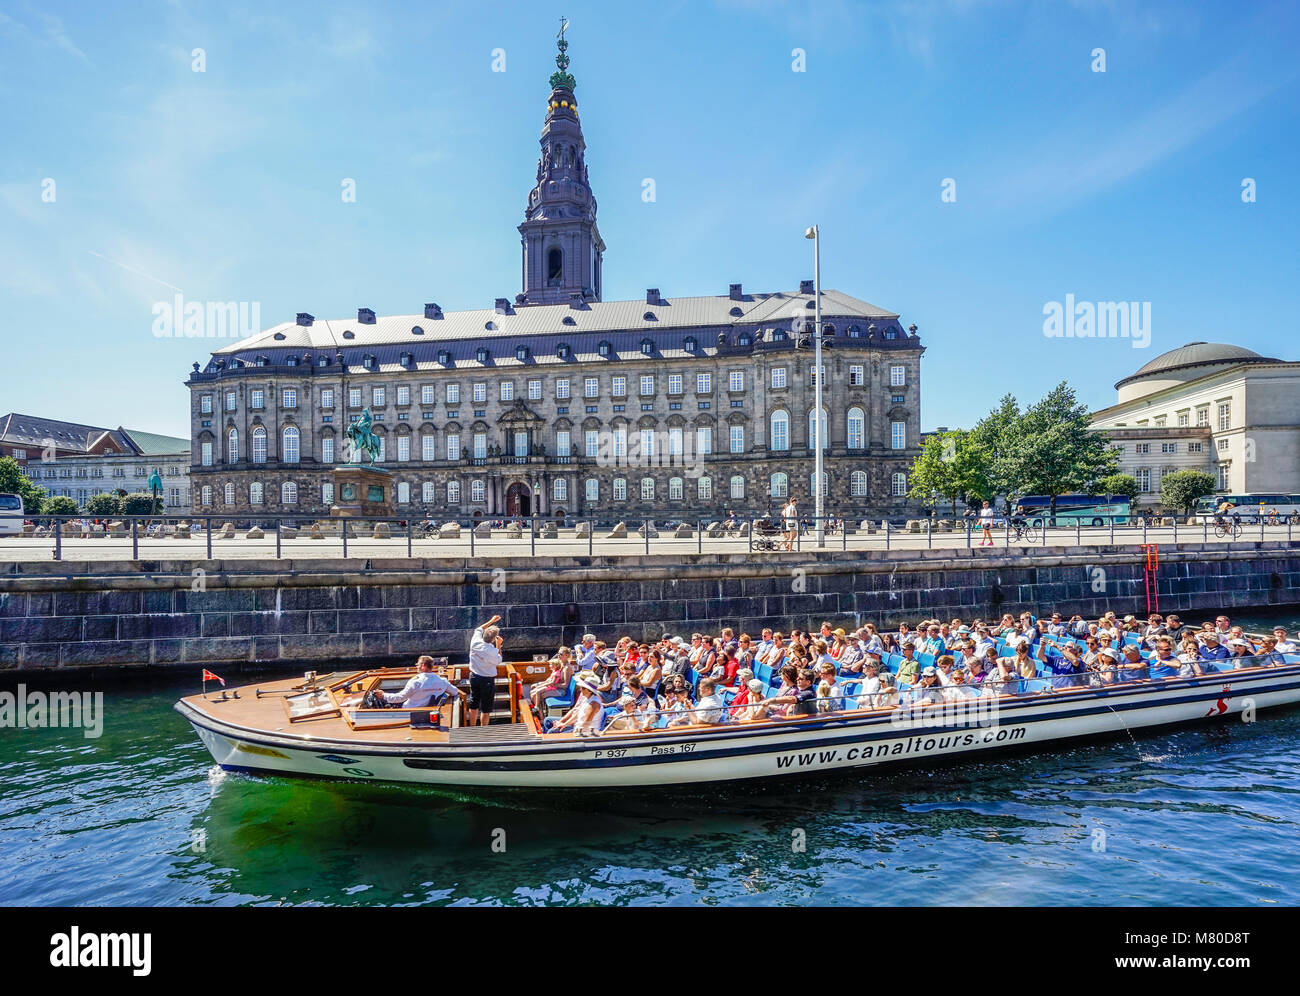 La Danimarca, la Zelanda, Copenaghen, tour in barca sul Slotholmens Kanal passando Christianborg Palazzo, sede del Folketinget il parlamento danese Foto Stock